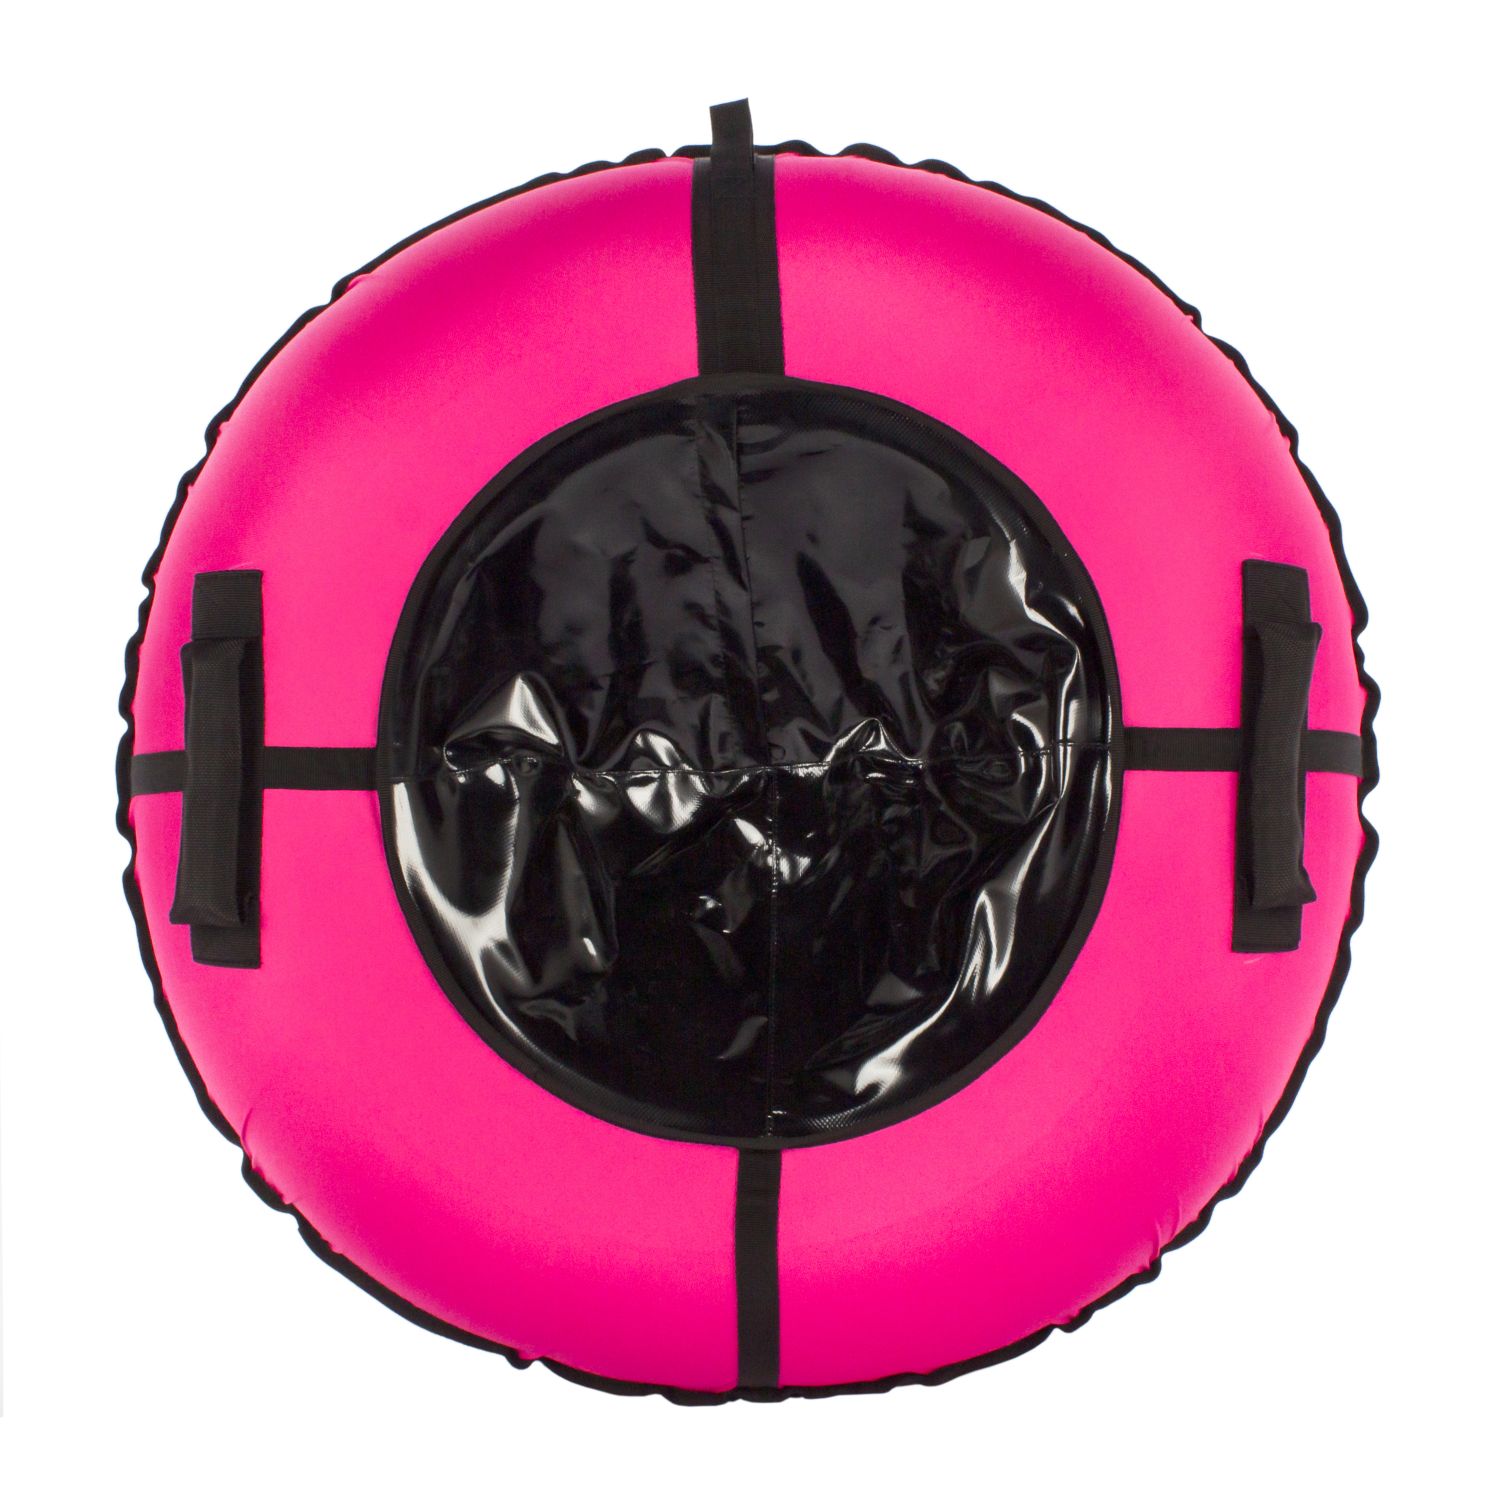 Тюбинг-ватрушка PINK 120 см Snowstorm розовый с черным - фото 2